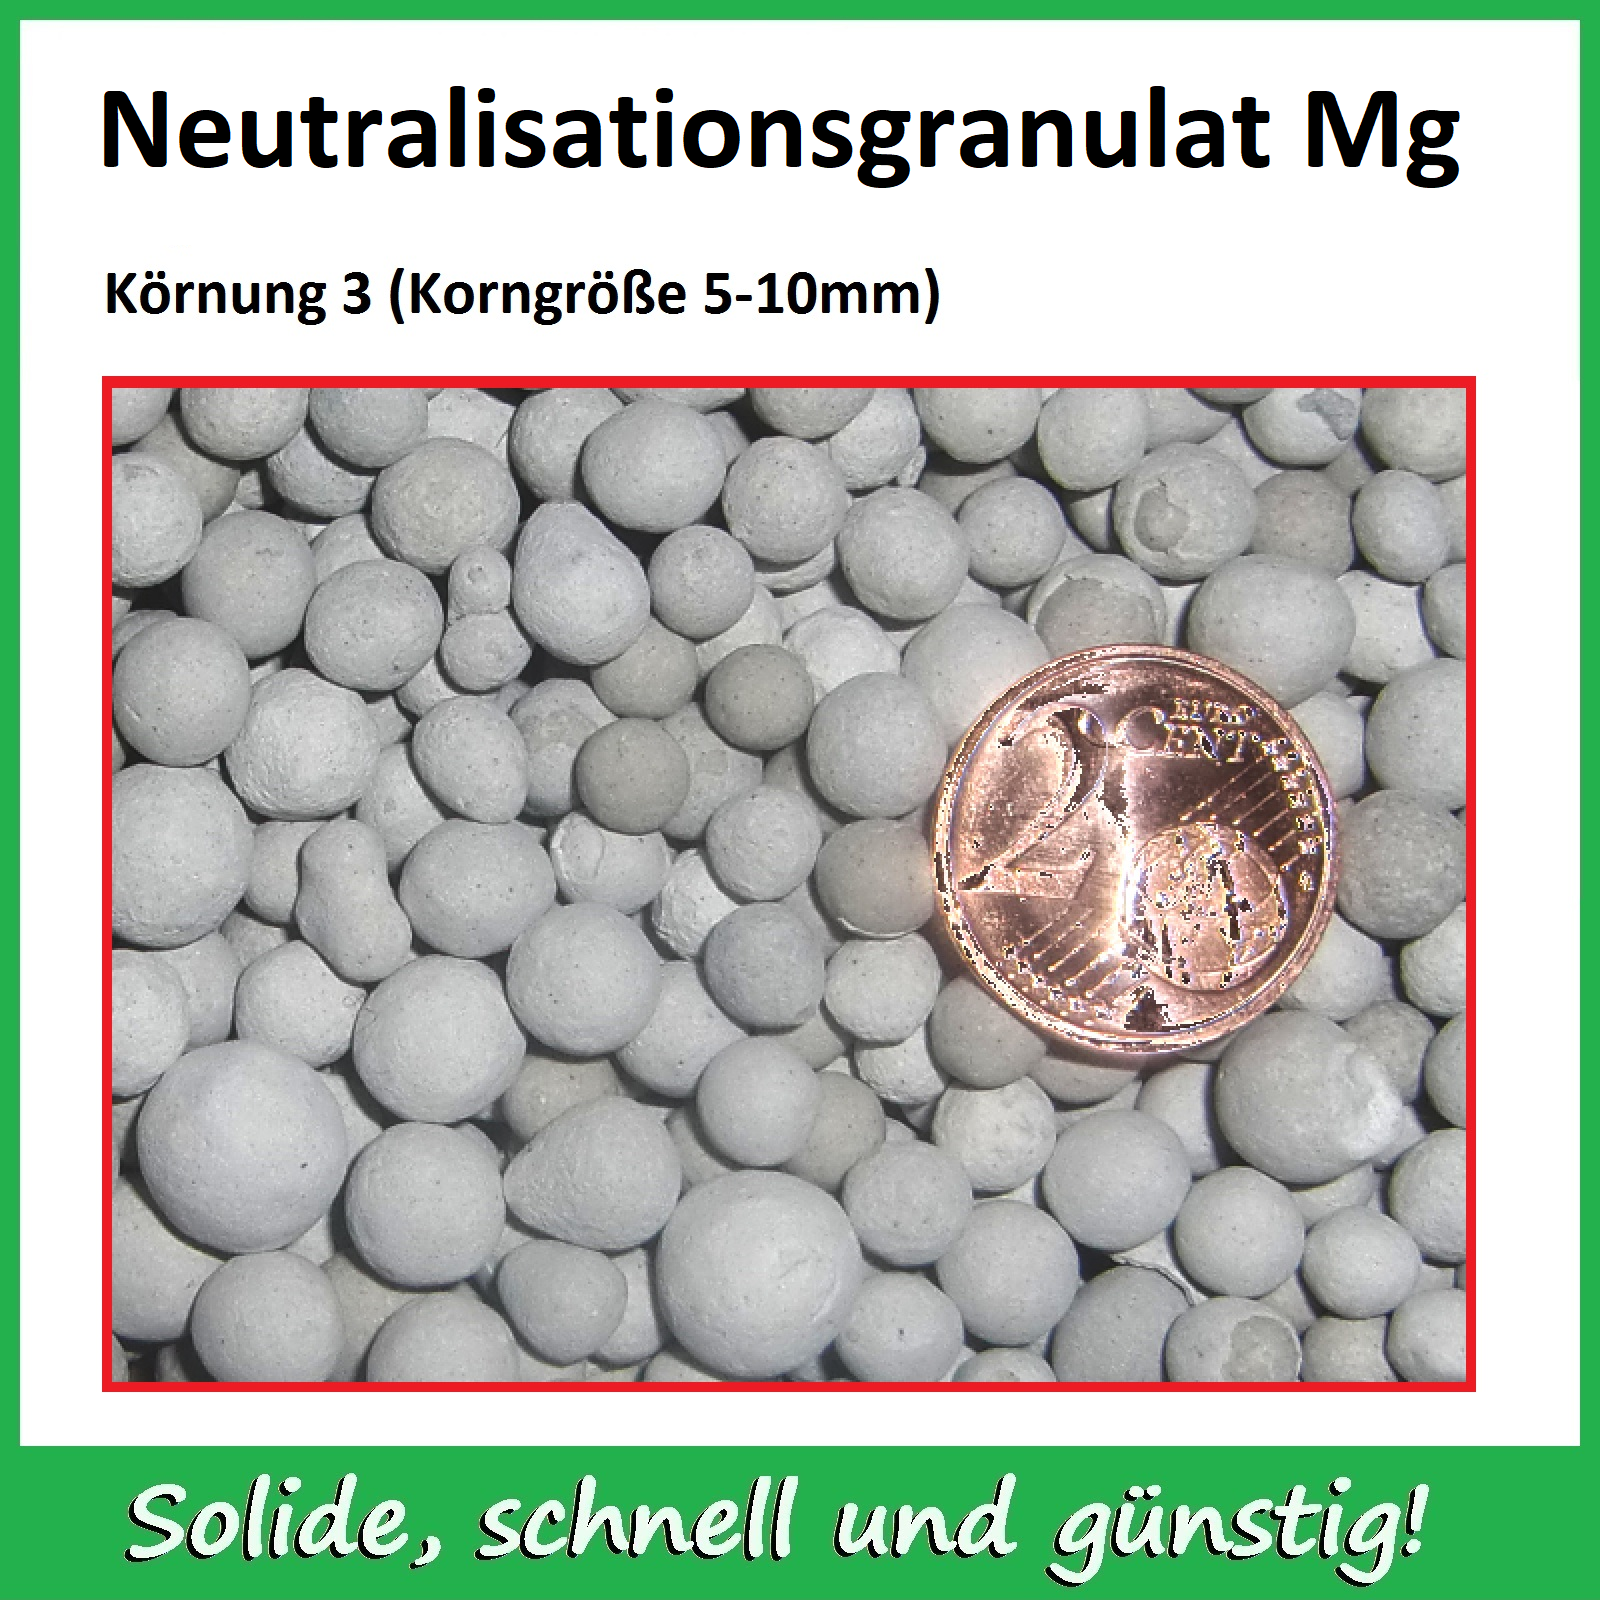 Neutralisationsgranulat Mg, 5,0 kg Beutel - Körnung 3